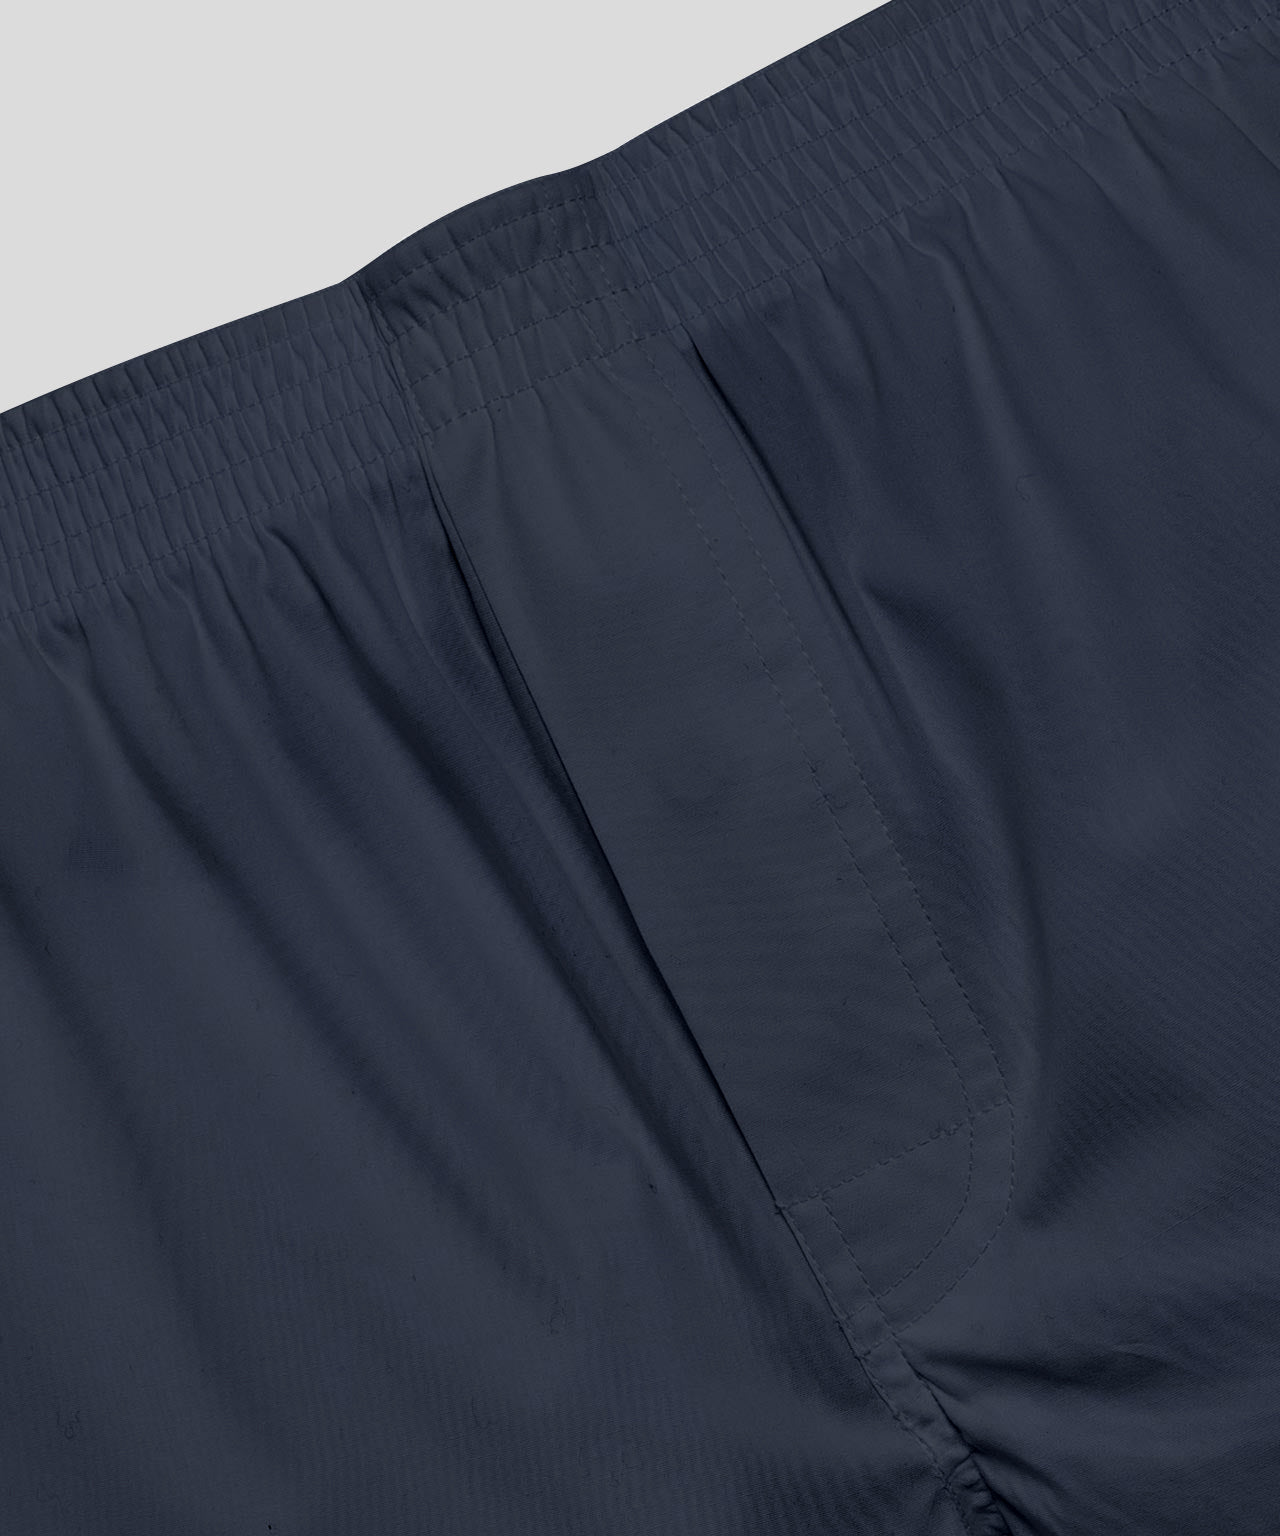 747 Boxer Shorts Kit